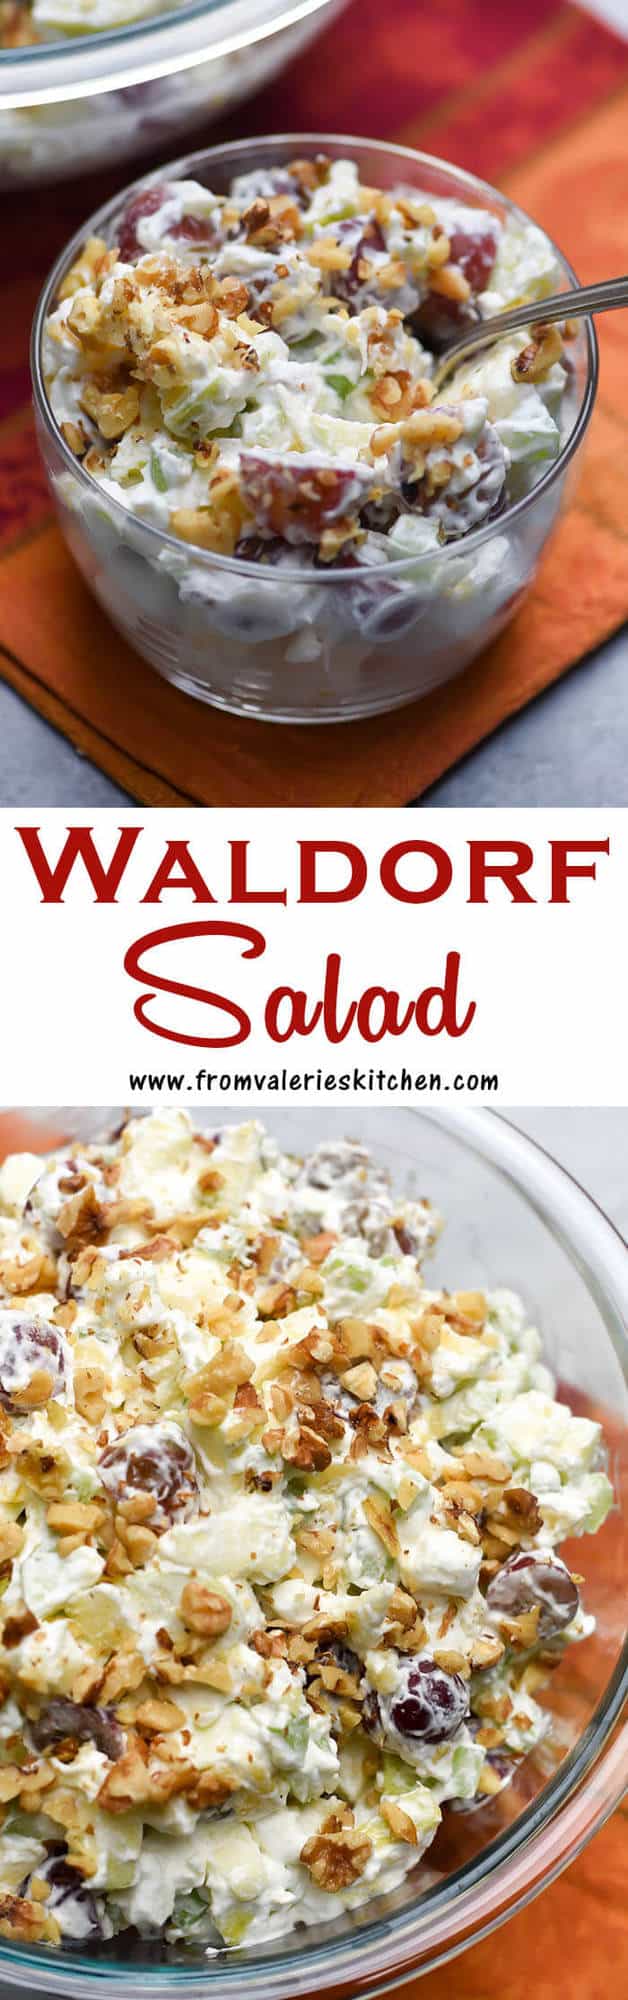 uma colagem vertical de duas imagens da salada Waldorf com sobreposição de texto.